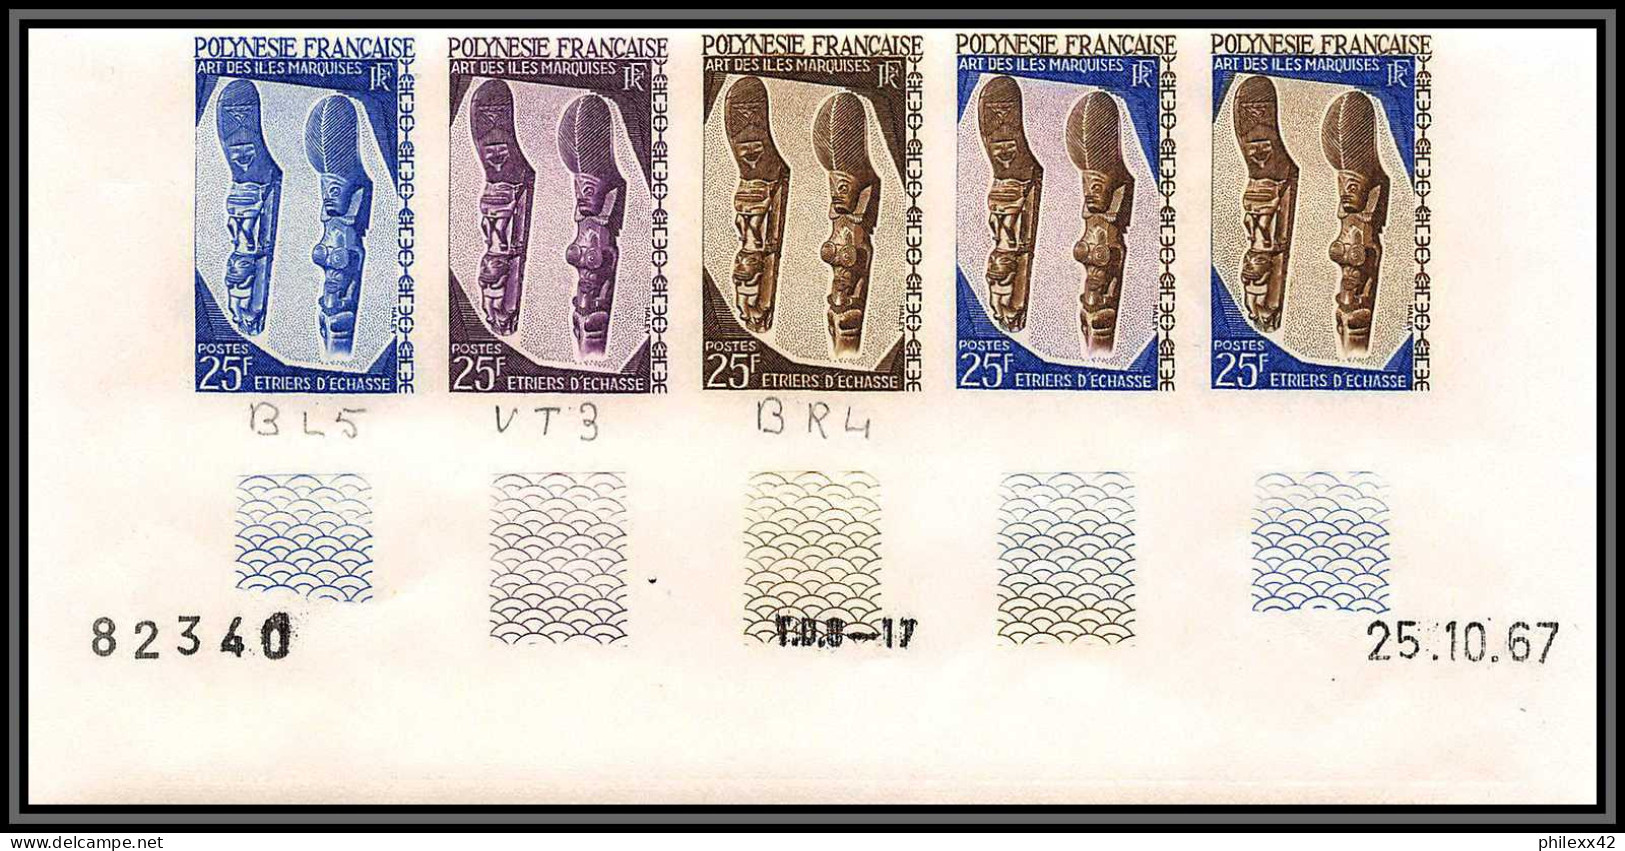 93037b Polynesie N°55 Arts Des Marquises Echasse Stilts Essai Proof Non Dentelé Imperf ** MNH Bande De 5 Strip - Unused Stamps